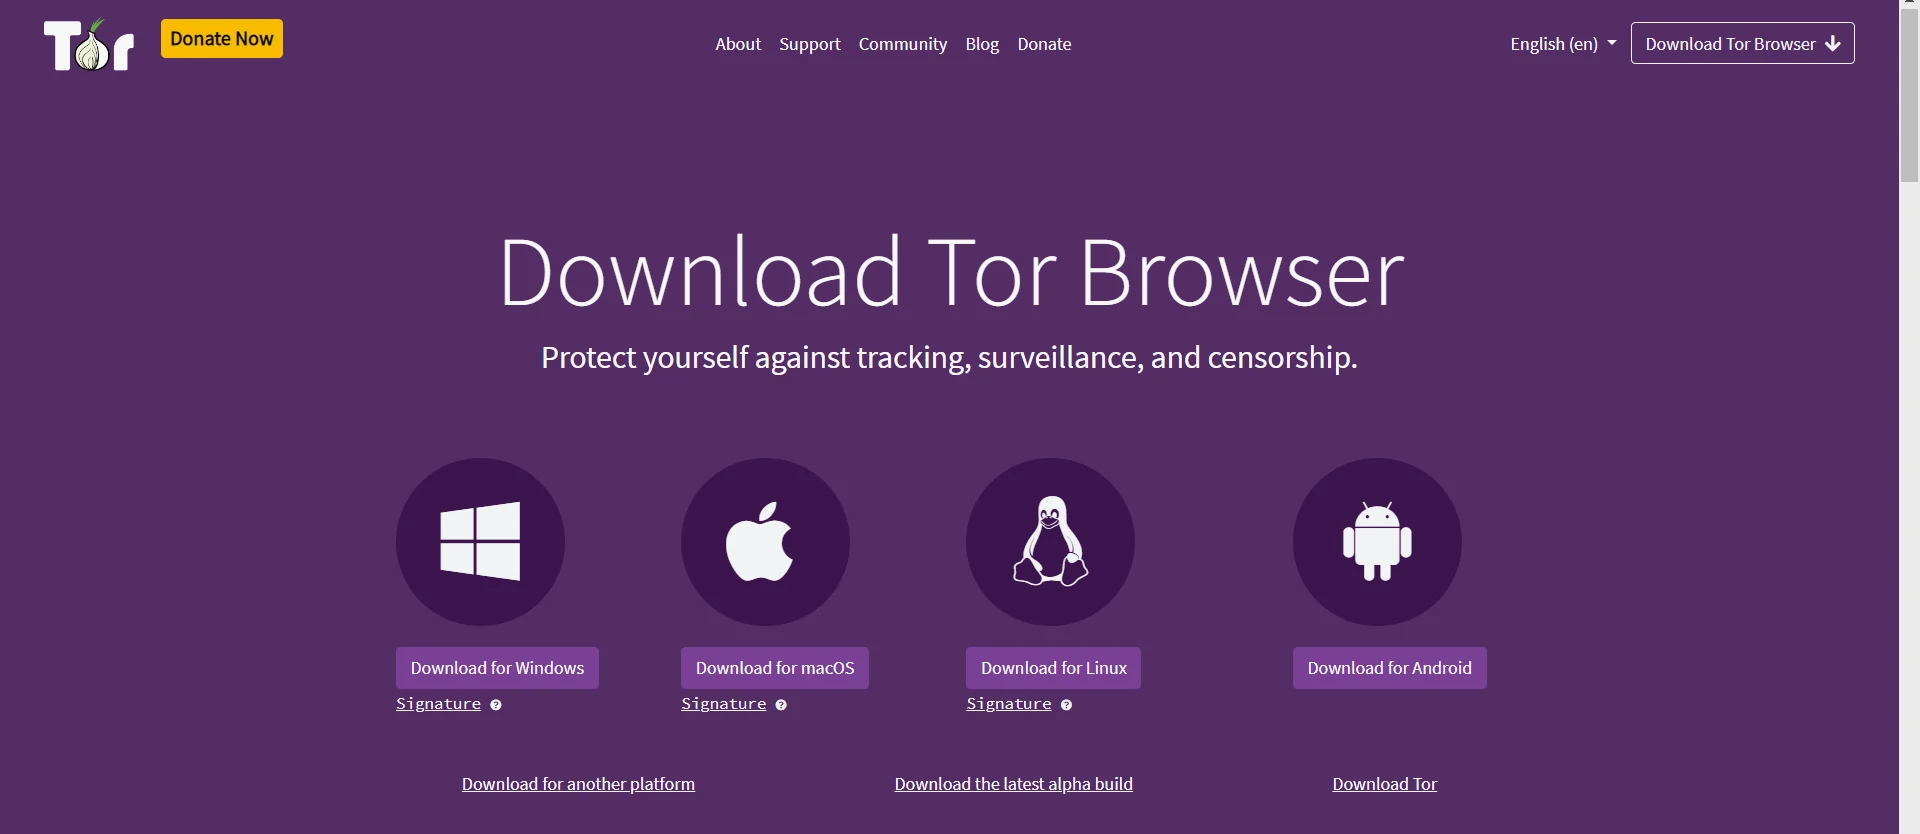 Página de download do navegador Tor